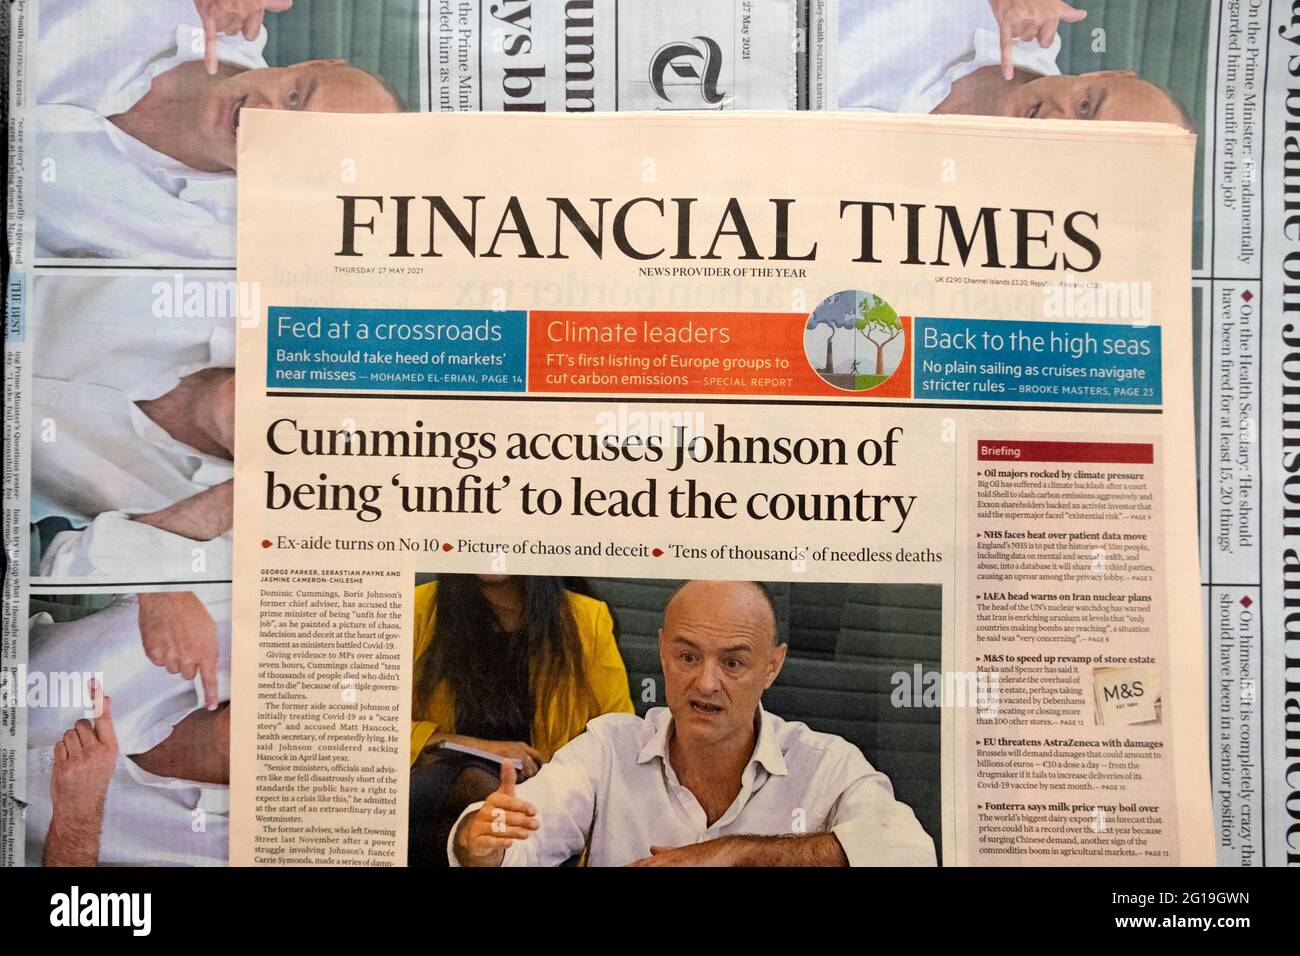 Financial Times FT titolo del giornale Dominic 'Cummings accusa Johnson di essere 'inadatto' a guidare il paese' 27 maggio 2021 Londra Inghilterra UK Foto Stock